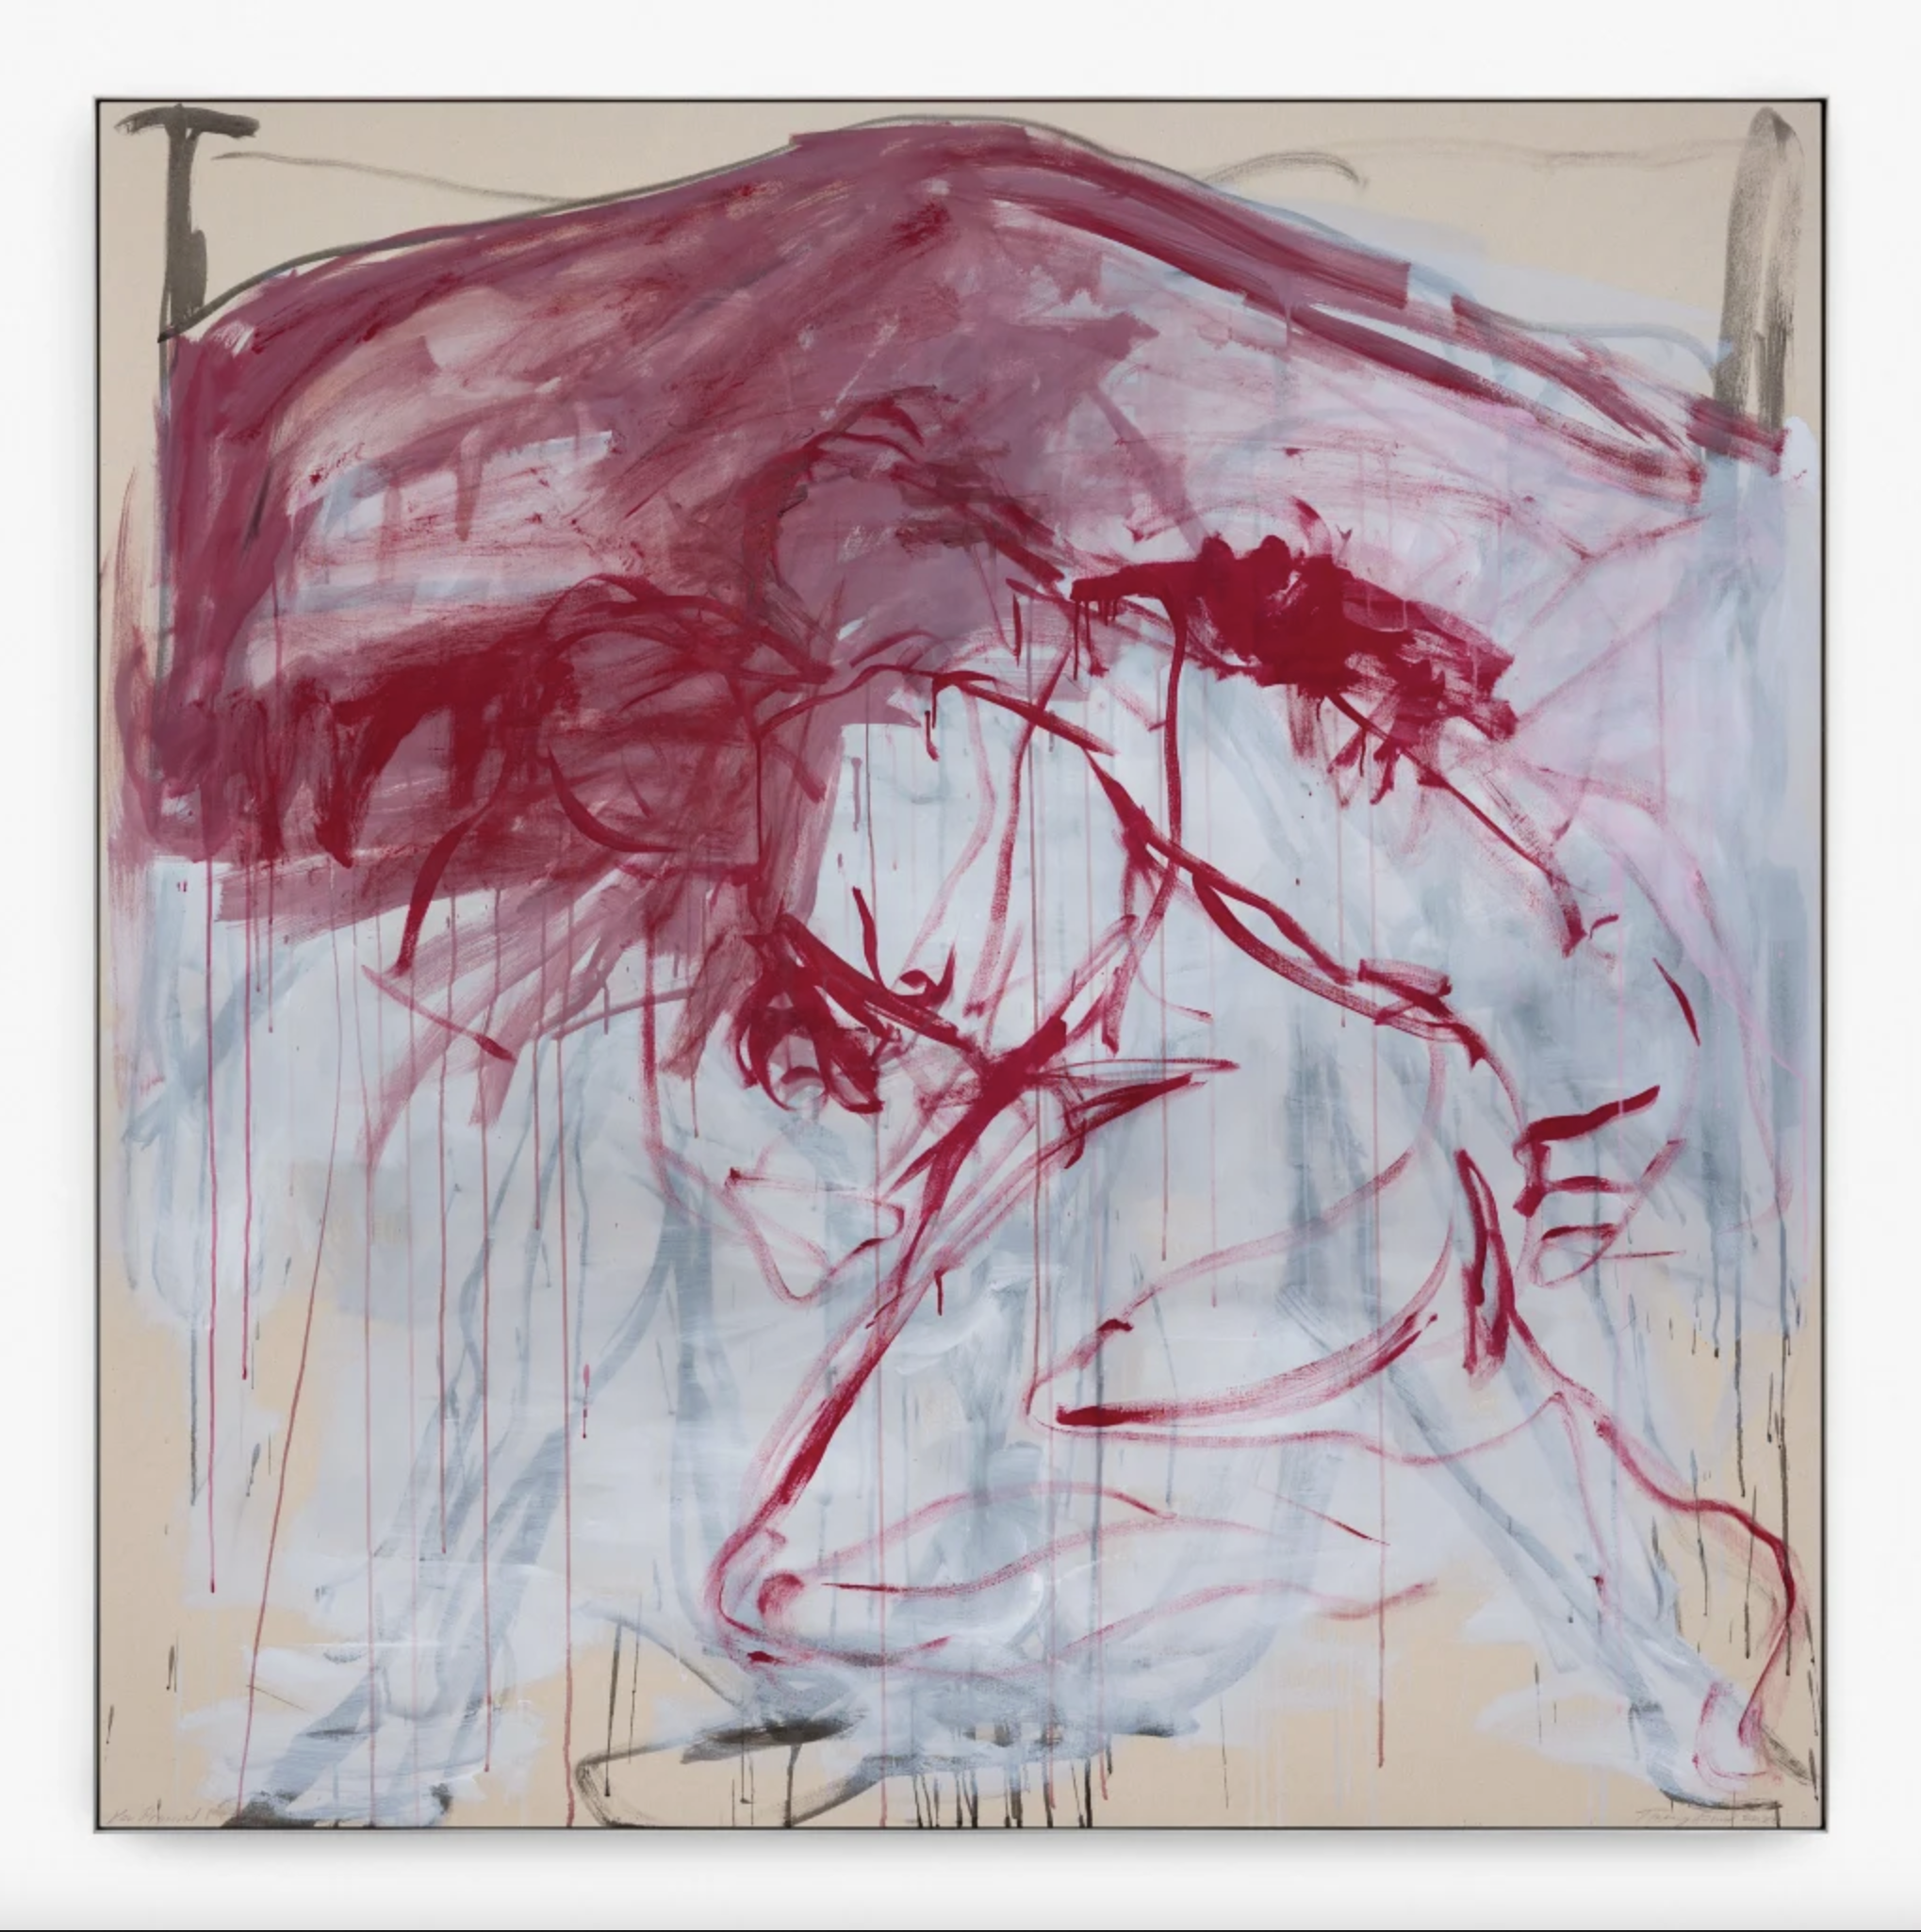 "You Promised Me Love", un trabajo reciente de la artista británica Tracey Emin, vendido por la galería Xavier Hufkens.